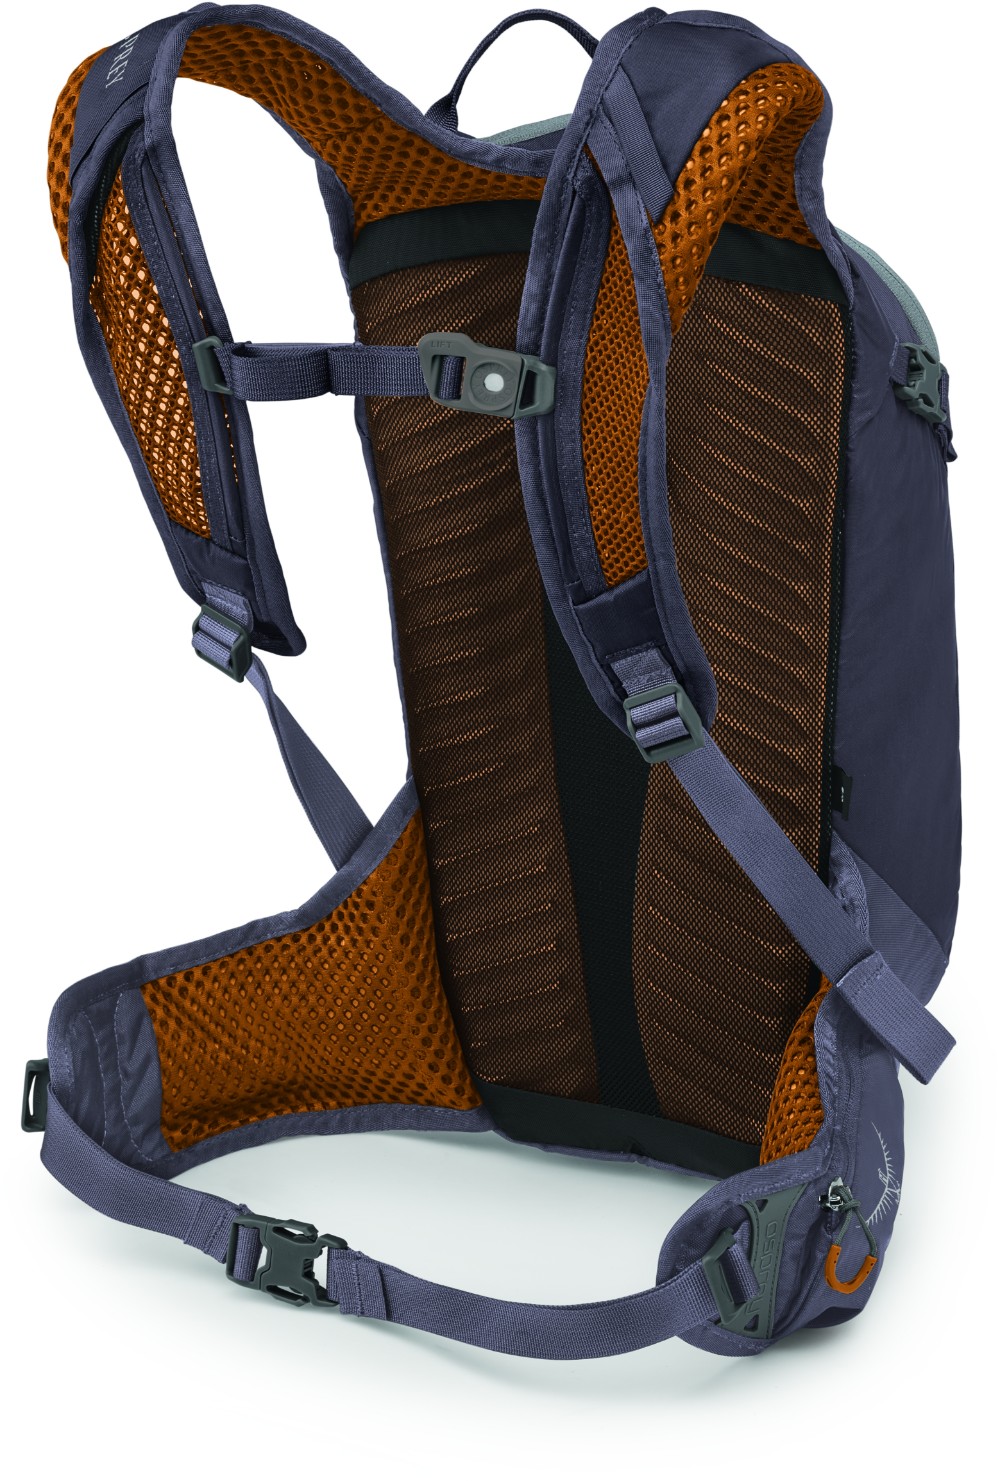 Salida 12 Backpack with 2.5L Reservoir image 1